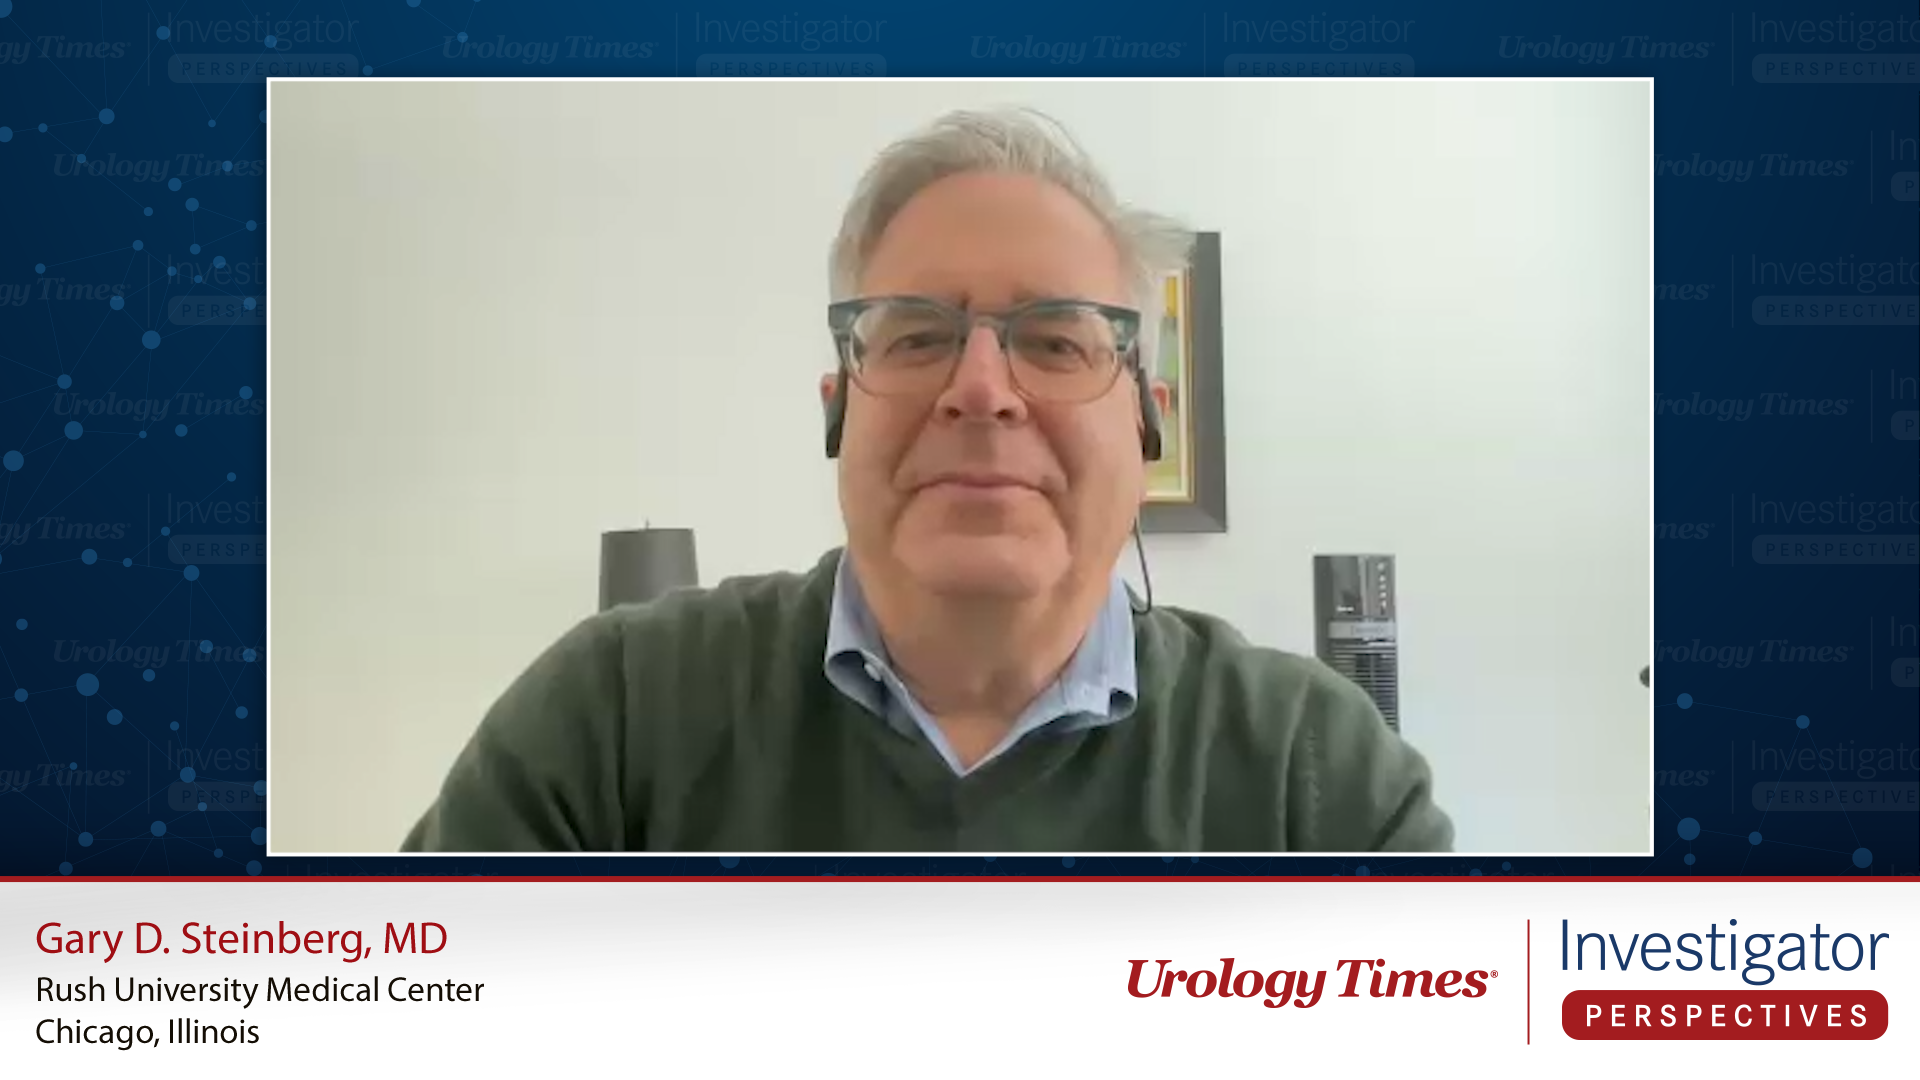 Gary D. Steinberg, MD, an expert on bladder cancer